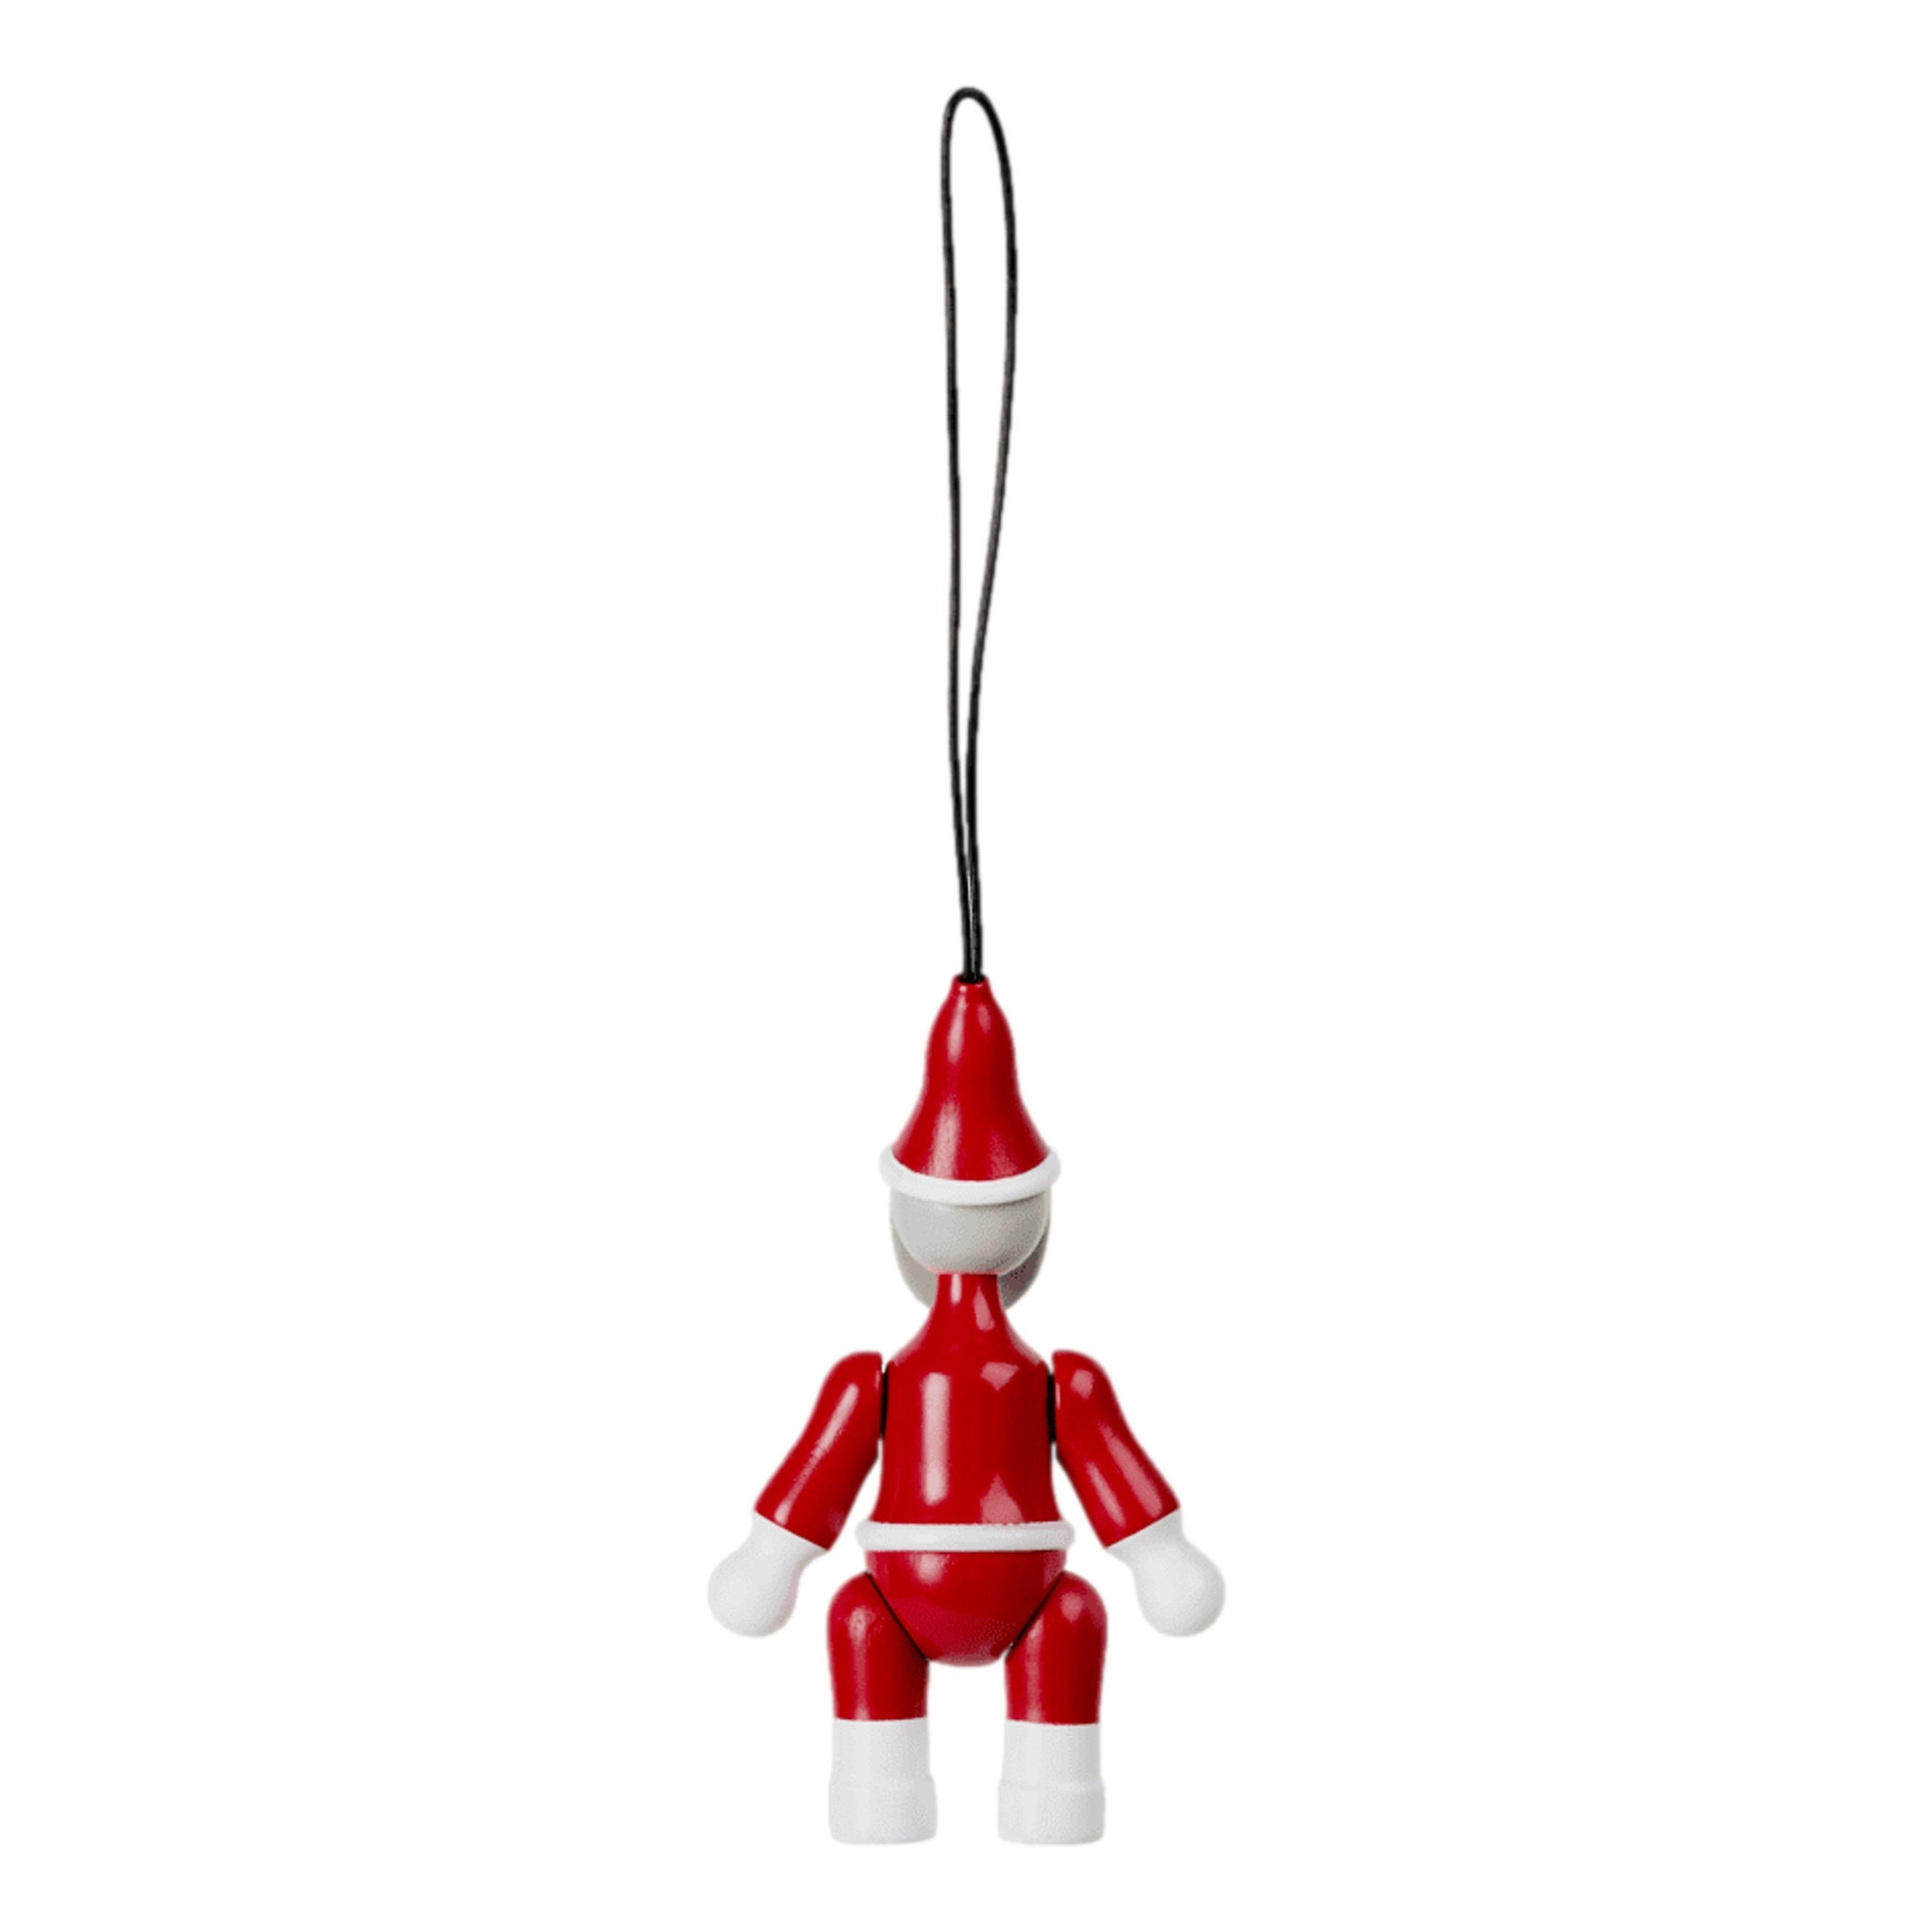 Kay Bojesen - Santa Claus & Santa Claus wooden ornaments